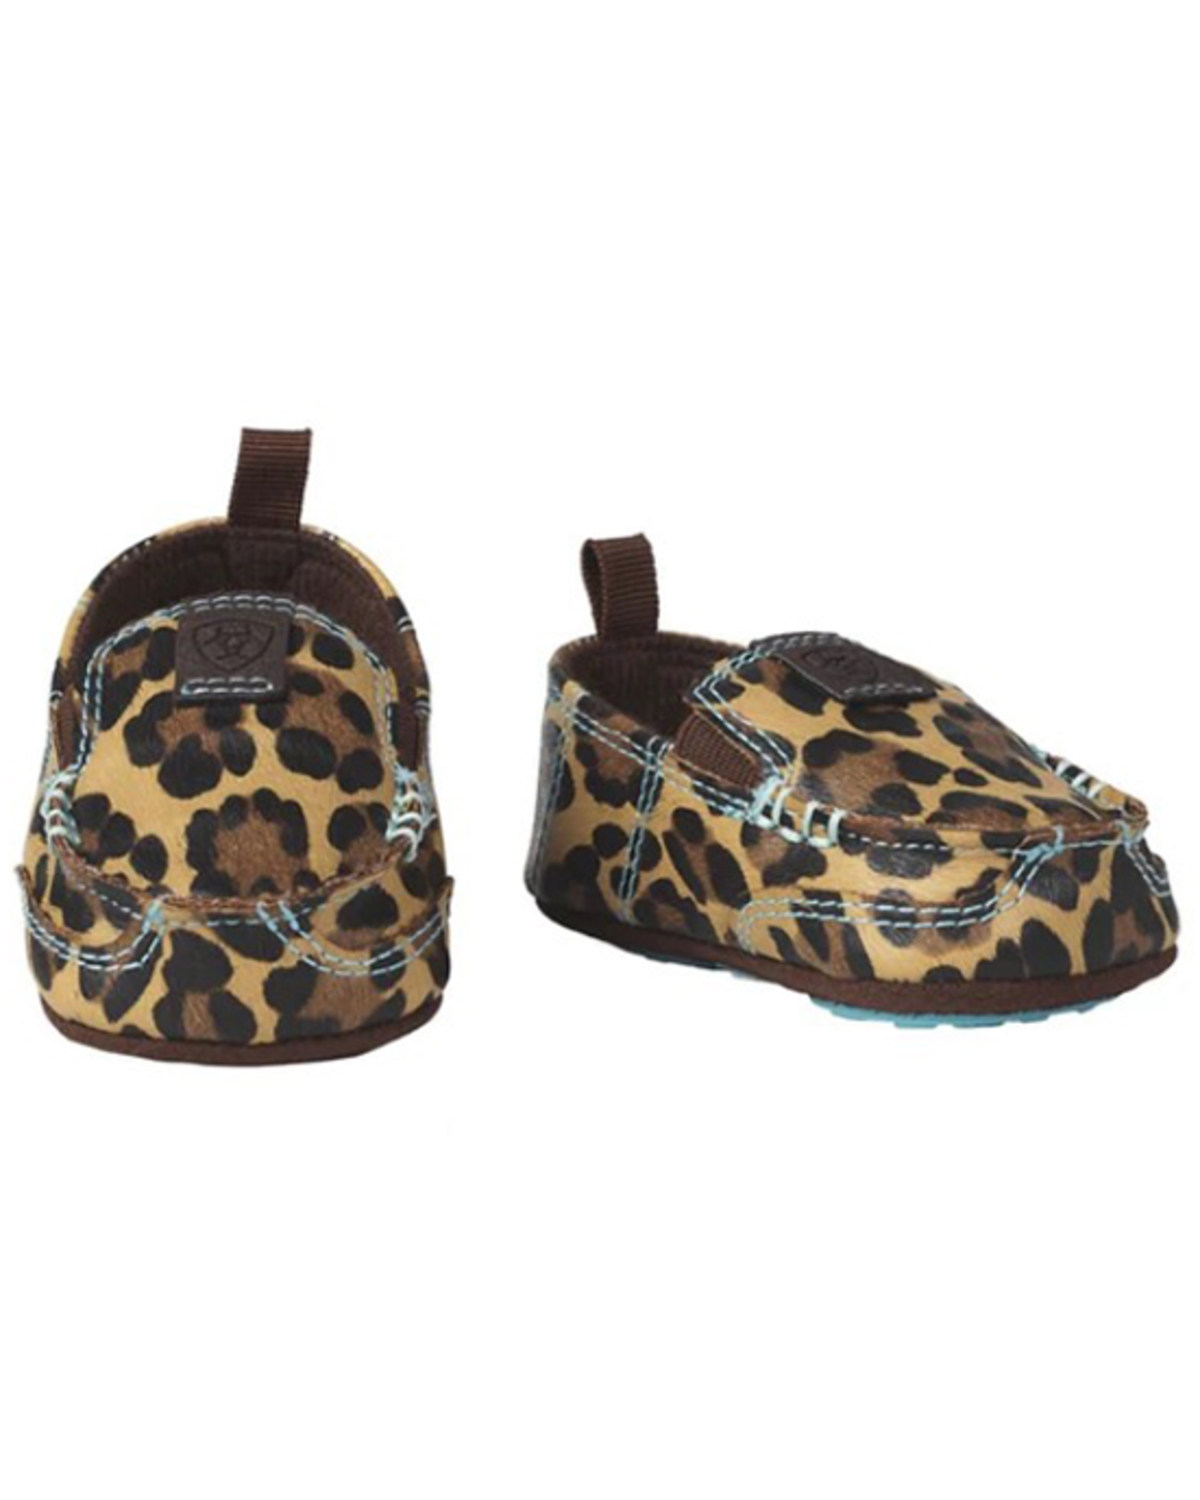 Ariat Infant-Girls' Lil Stomper Natalie Leopard Print Slip-On Shoes